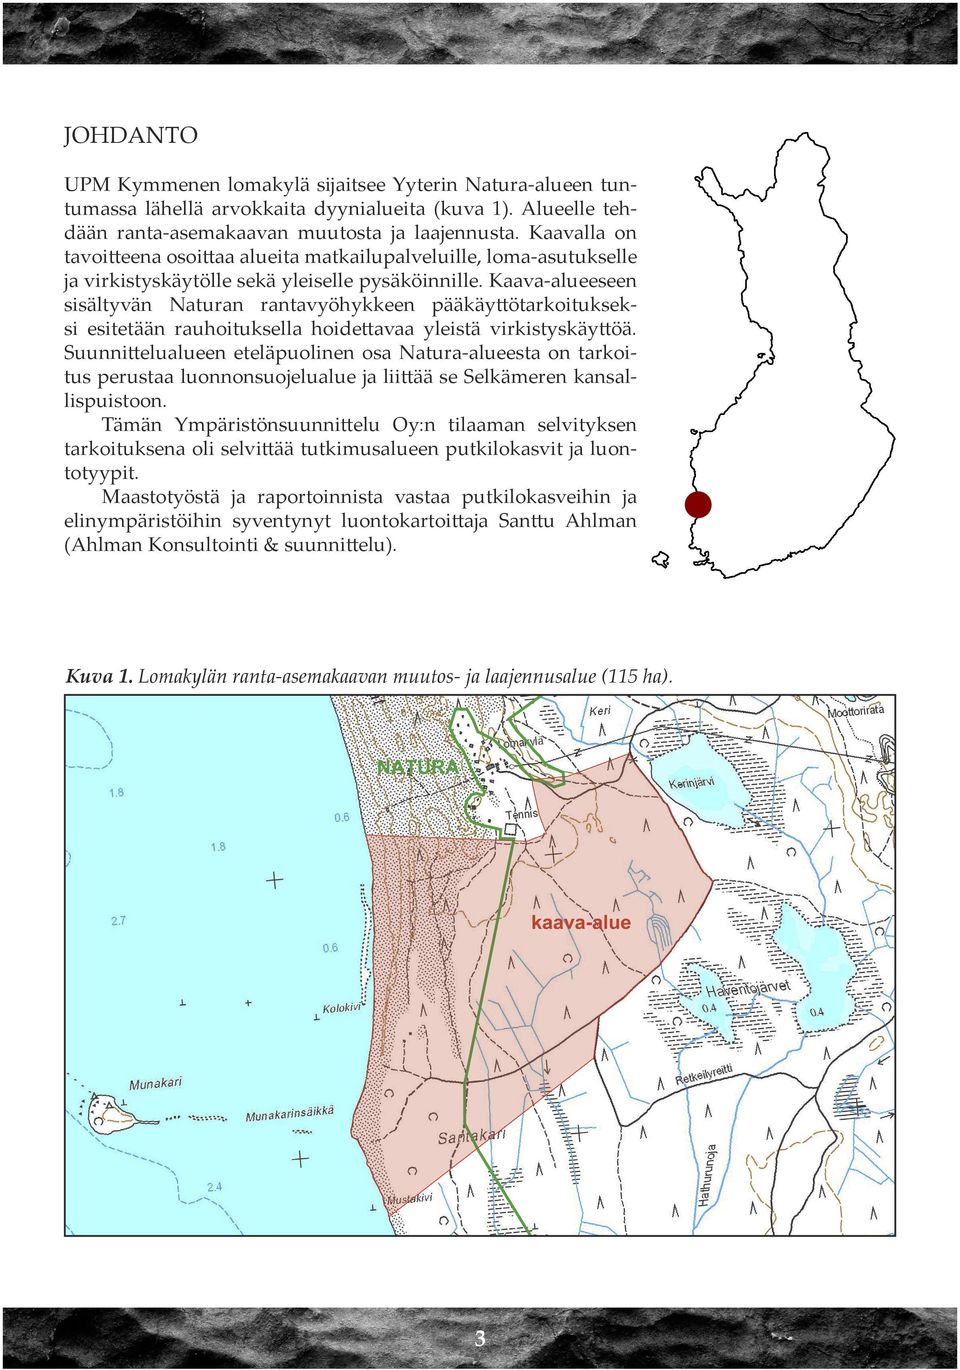 Kaava-alueeseen sisältyvän Naturan rantavyöhykkeen pääkäyttötarkoitukseksi esitetään rauhoituksella hoidettavaa yleistä virkistyskäyttöä.